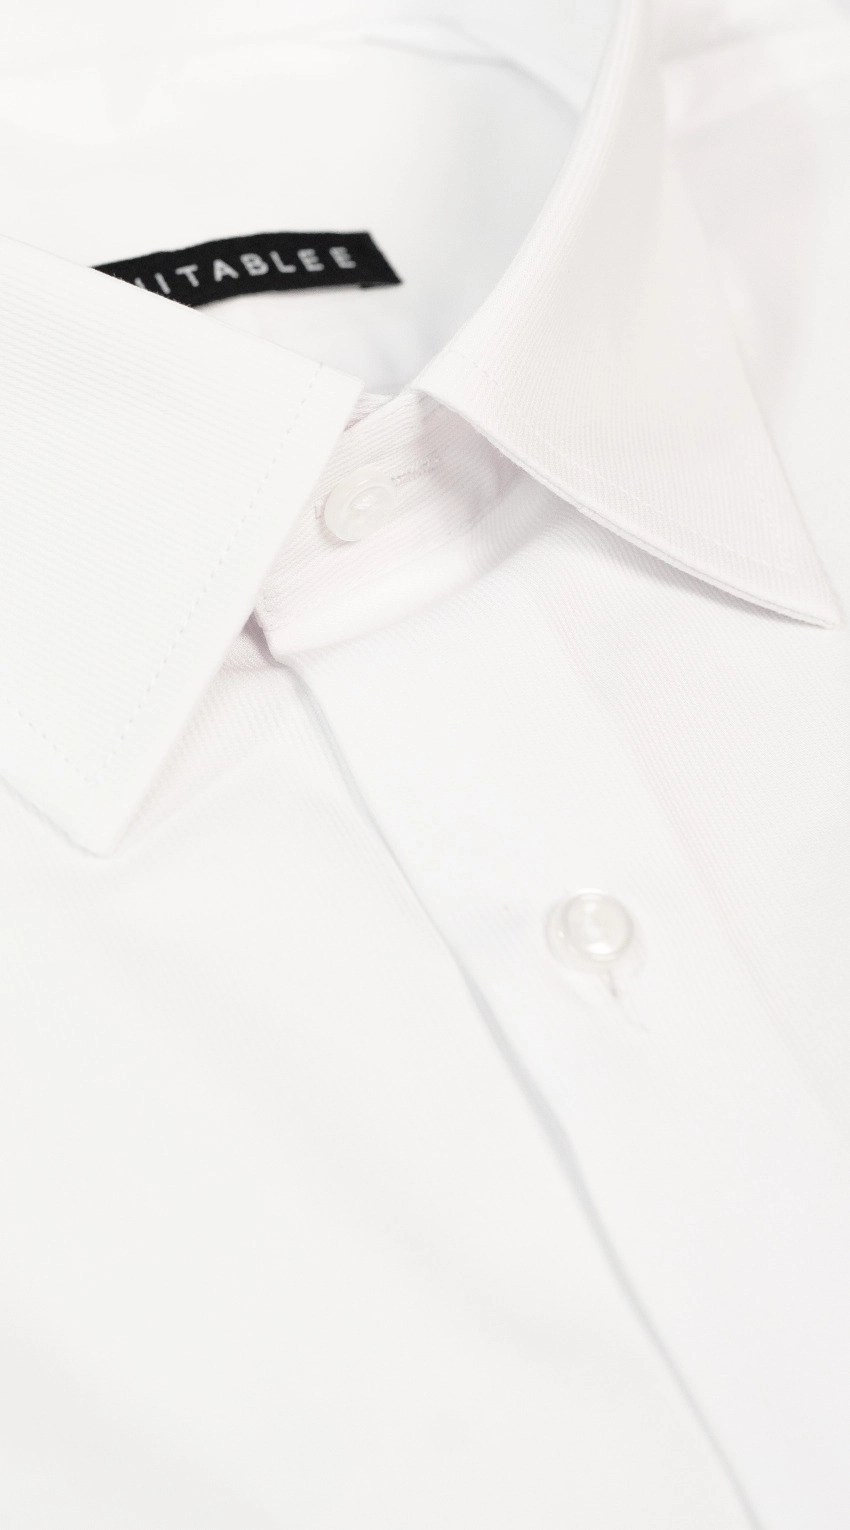 White Pique Dress Shirt